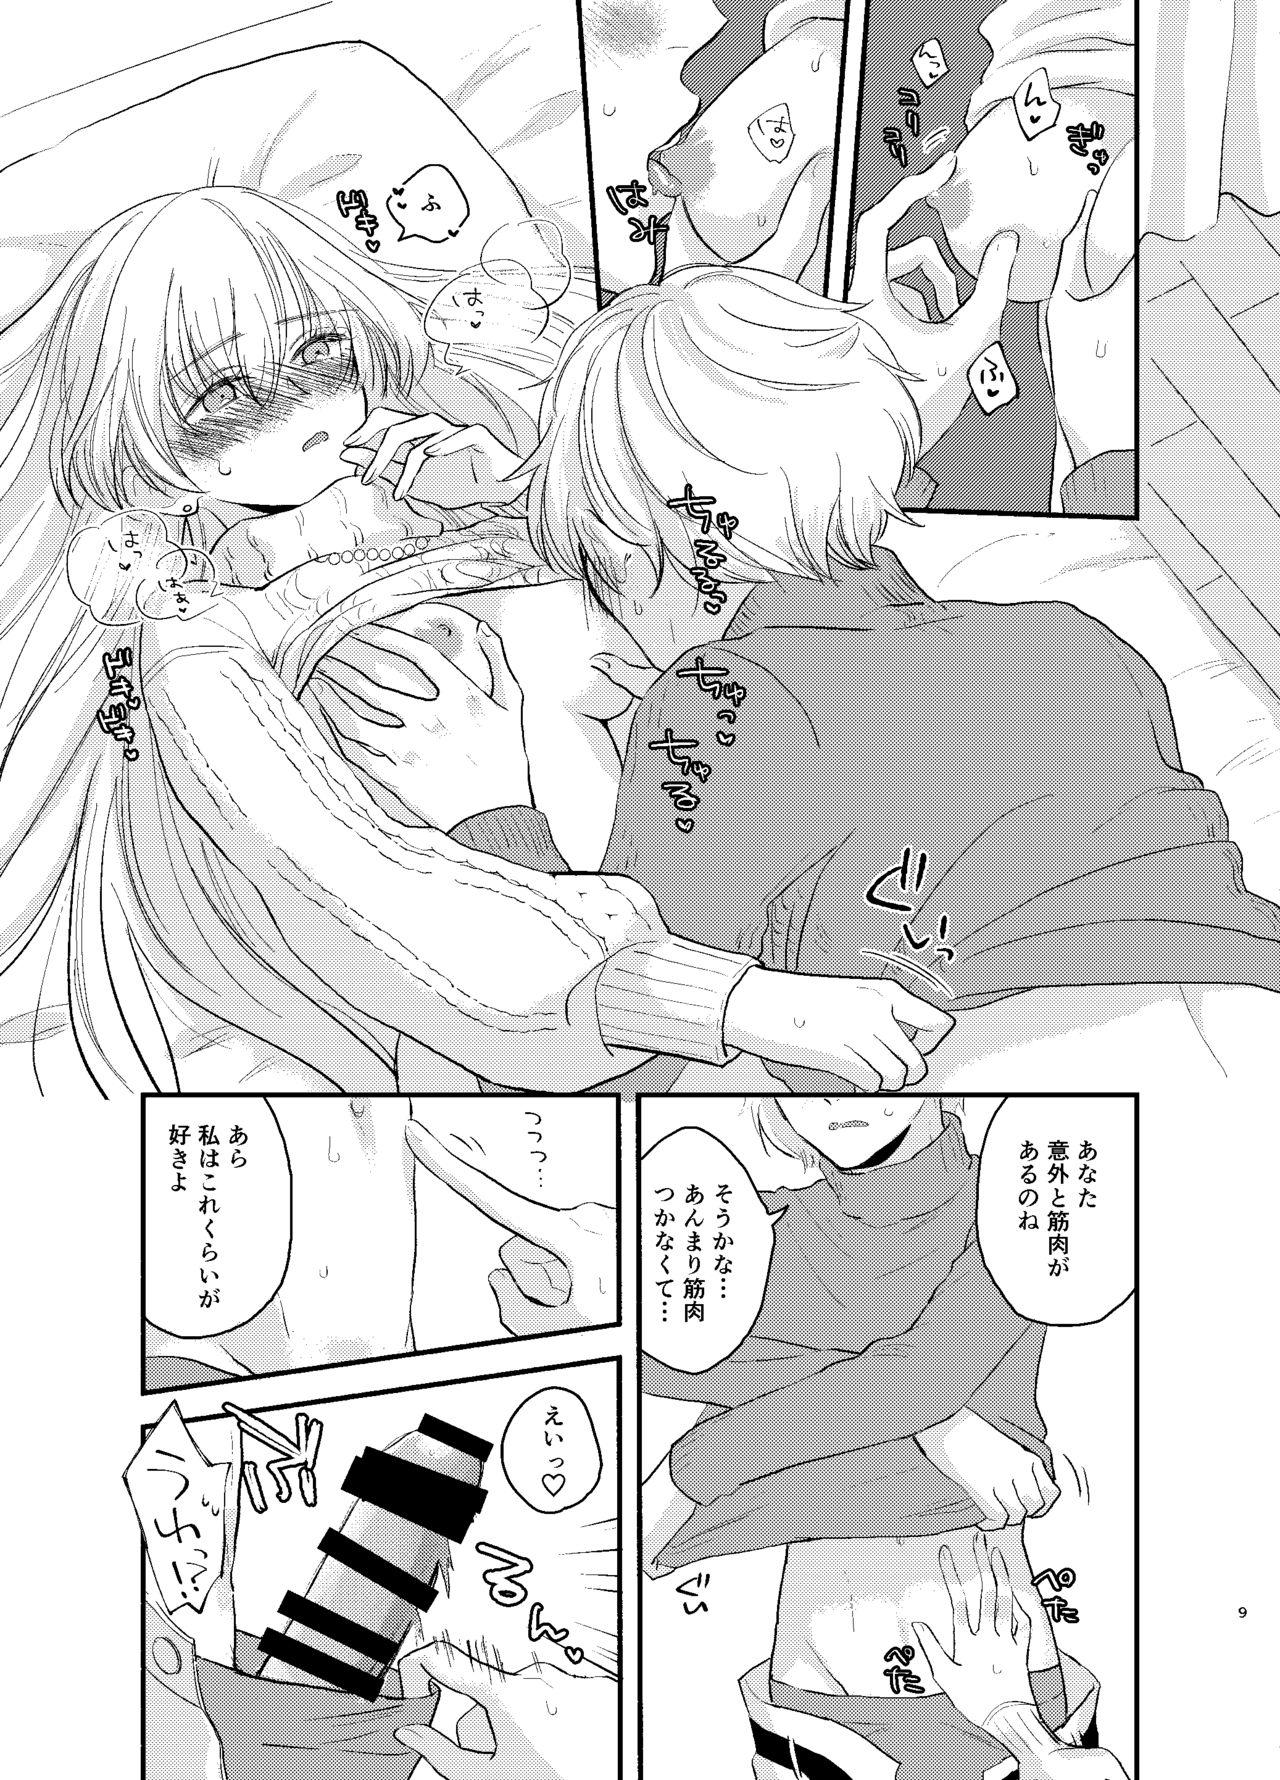 Porra Kadoc Watashi o Dakinasai! - Fate grand order Virginity - Page 9